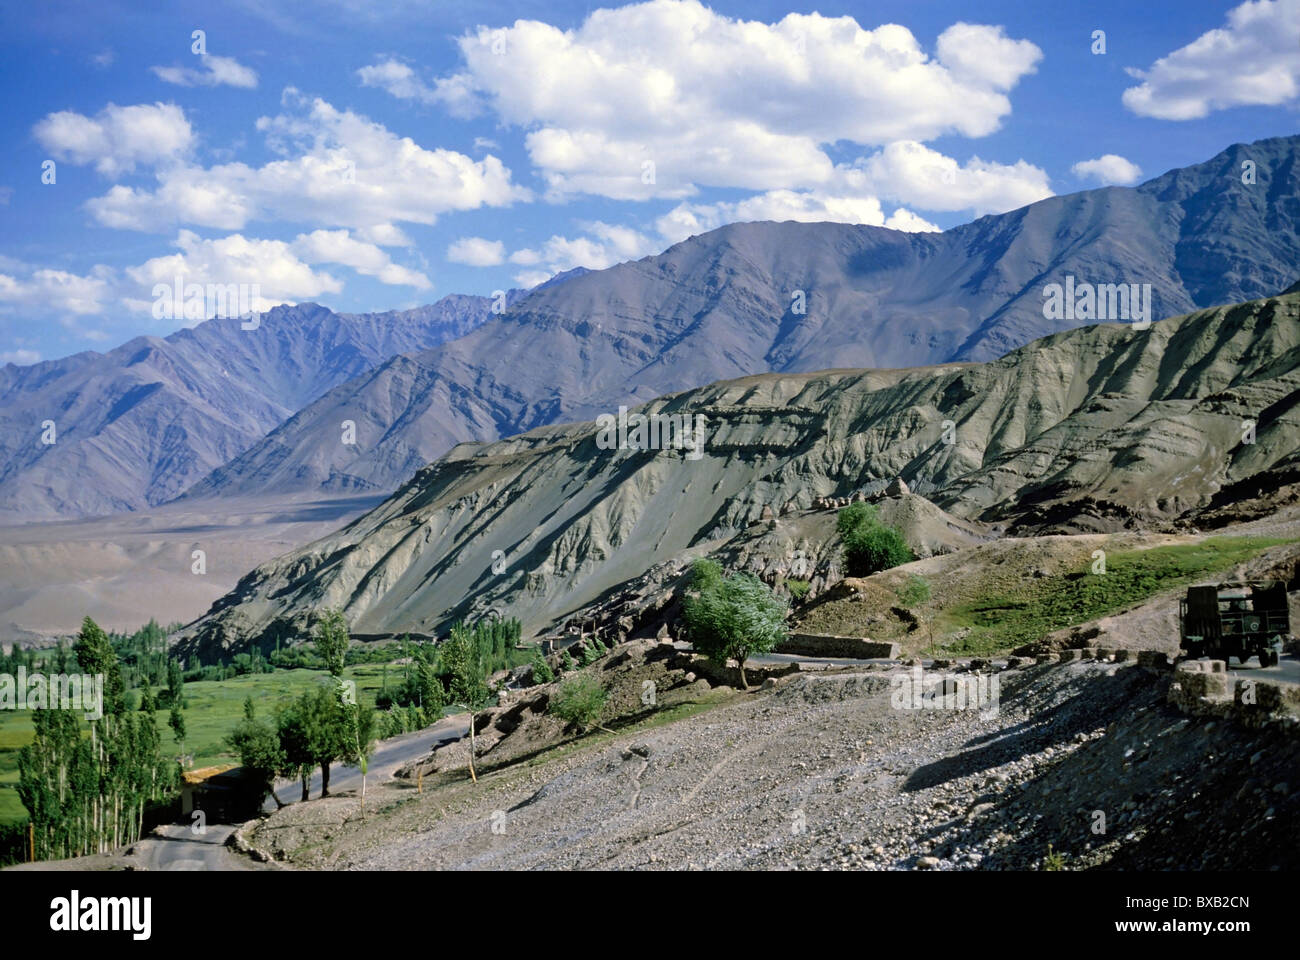 Ladakh, Kashmir, India - road and mountain range. Stock Photo